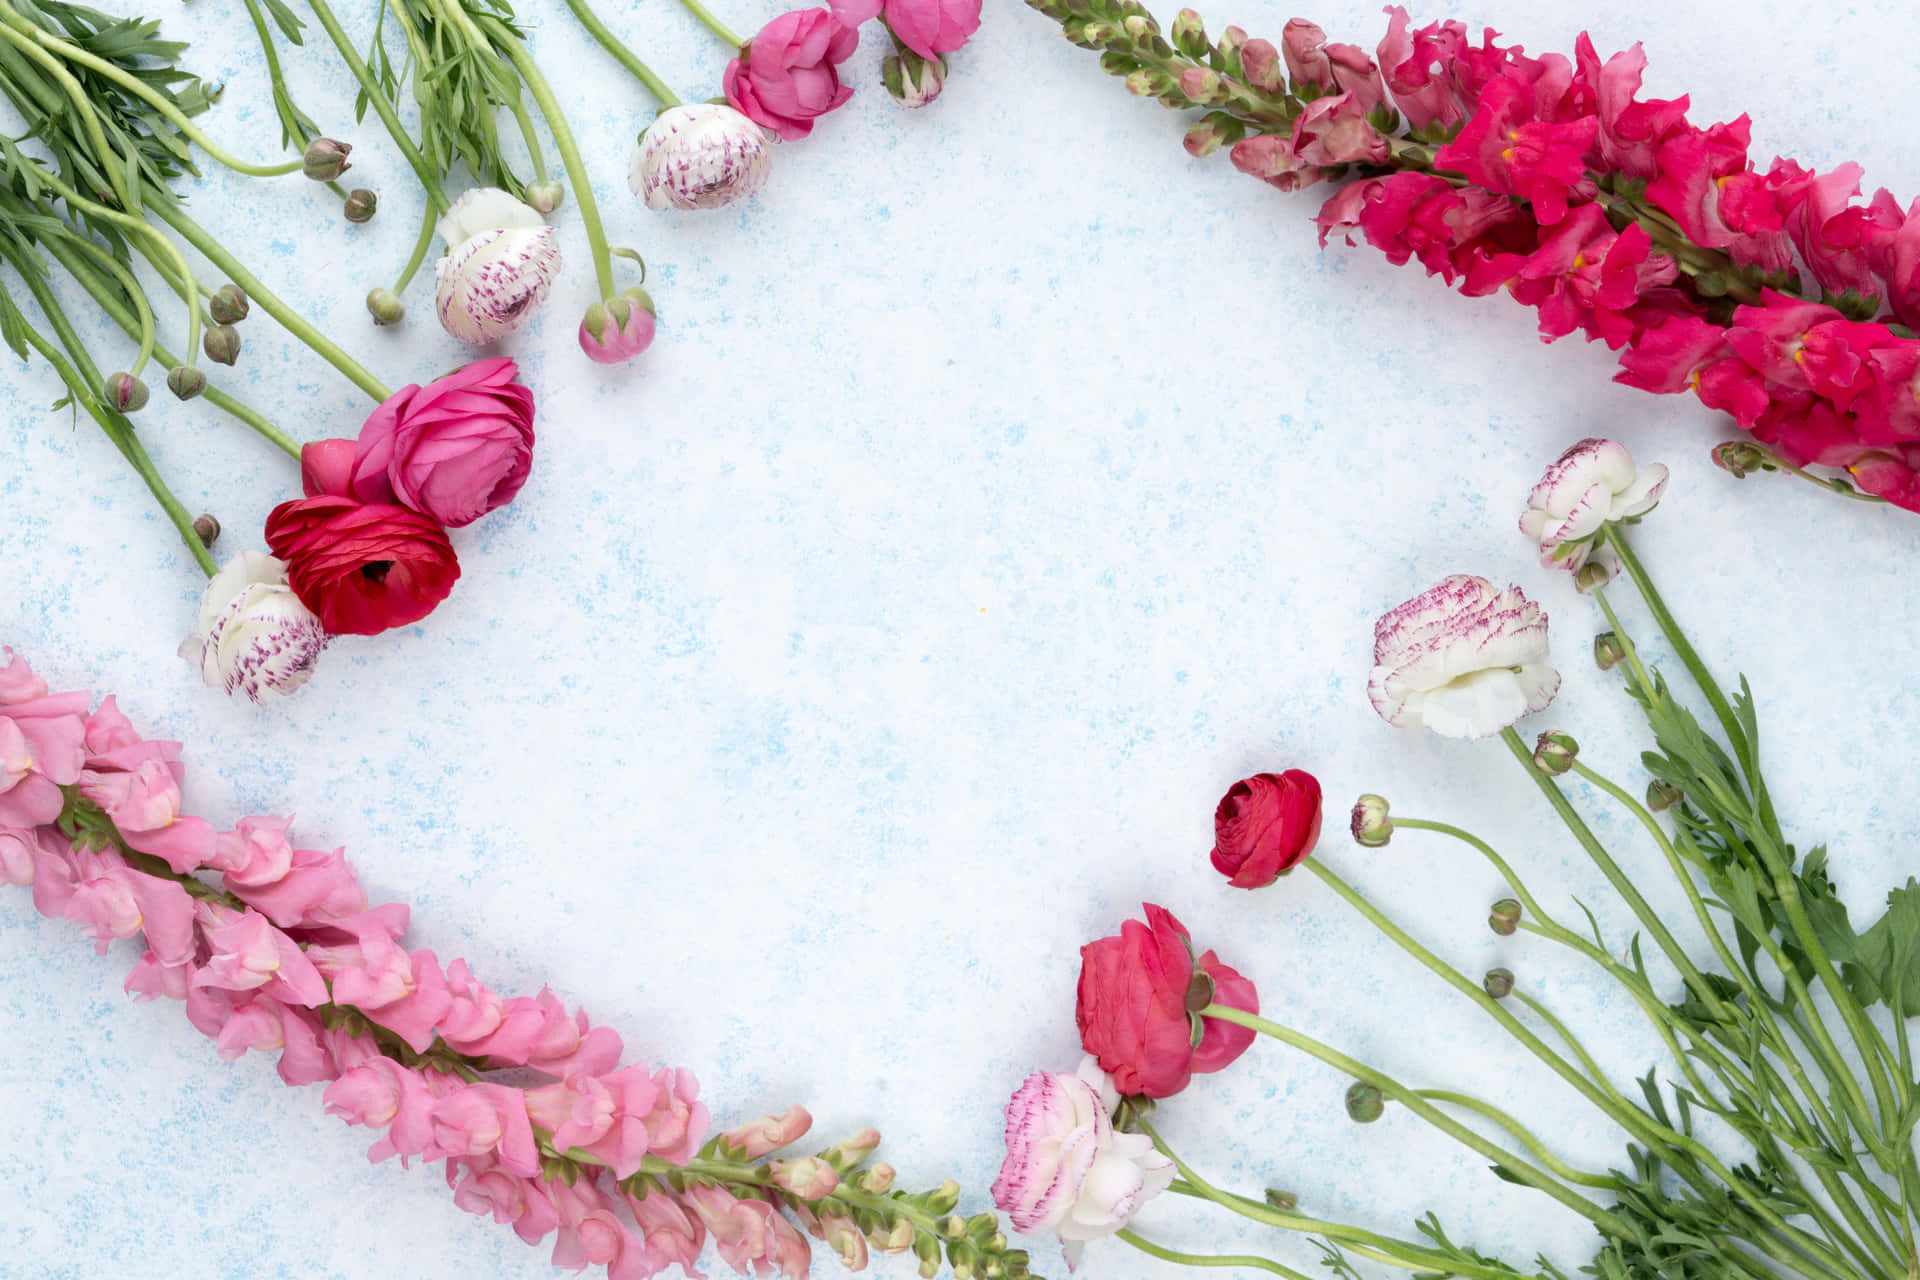 Einstrauß Rosa Und Weißer Blumen, Angeordnet In Herzform.